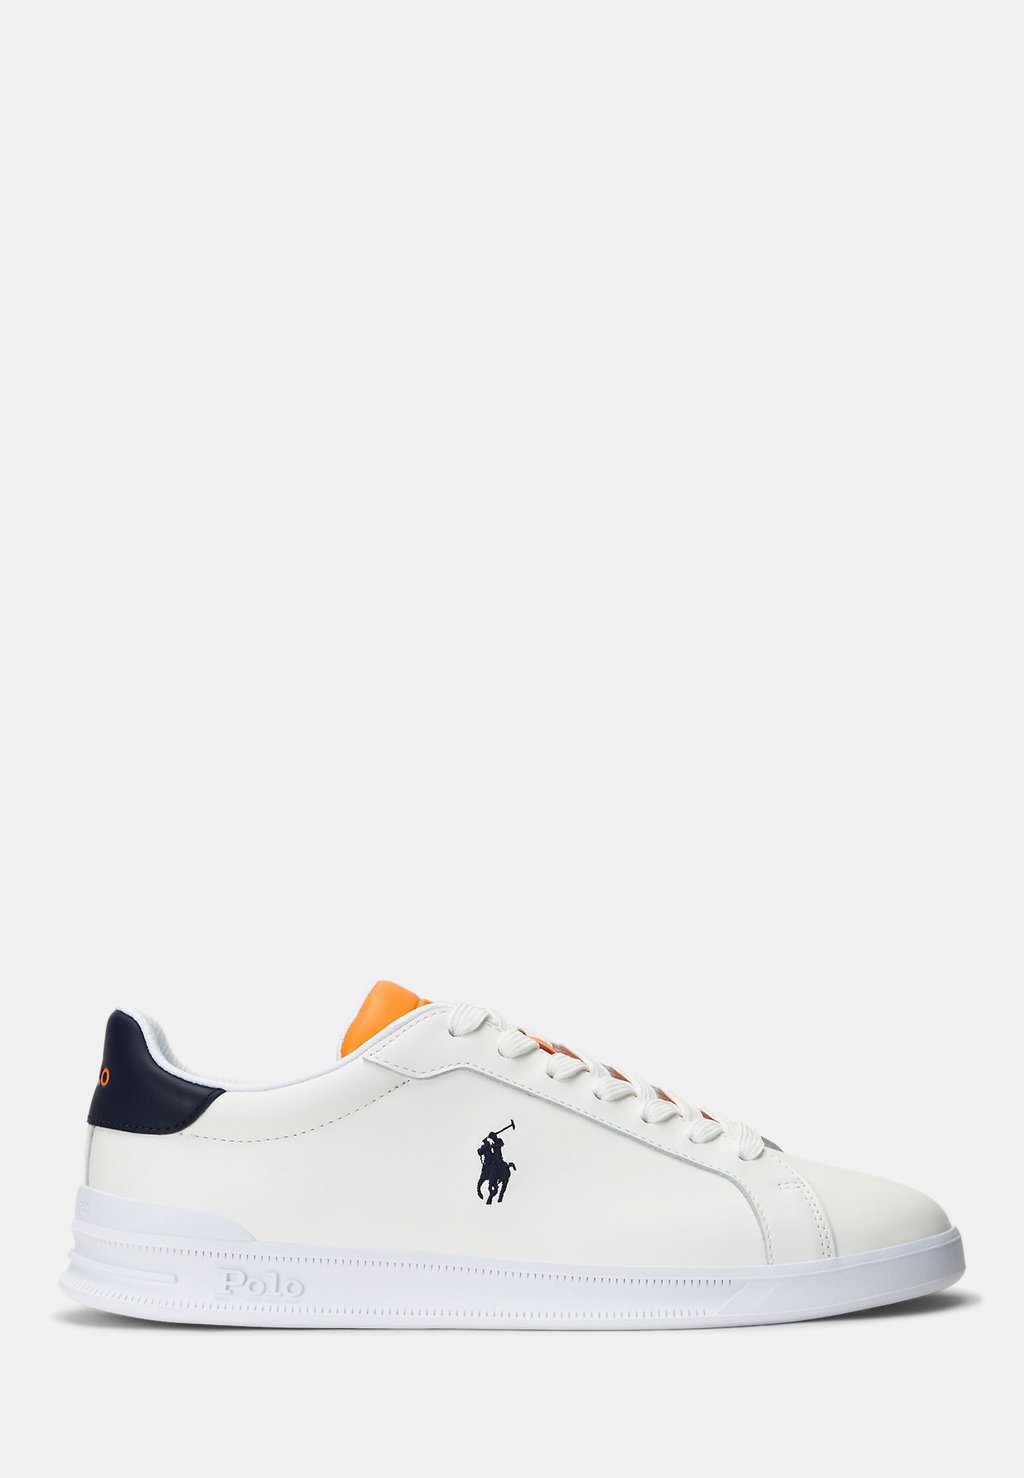 Кроссовки низкие HERITAGE COURT TOP , цвет white/navy/orange Polo Ralph Lauren